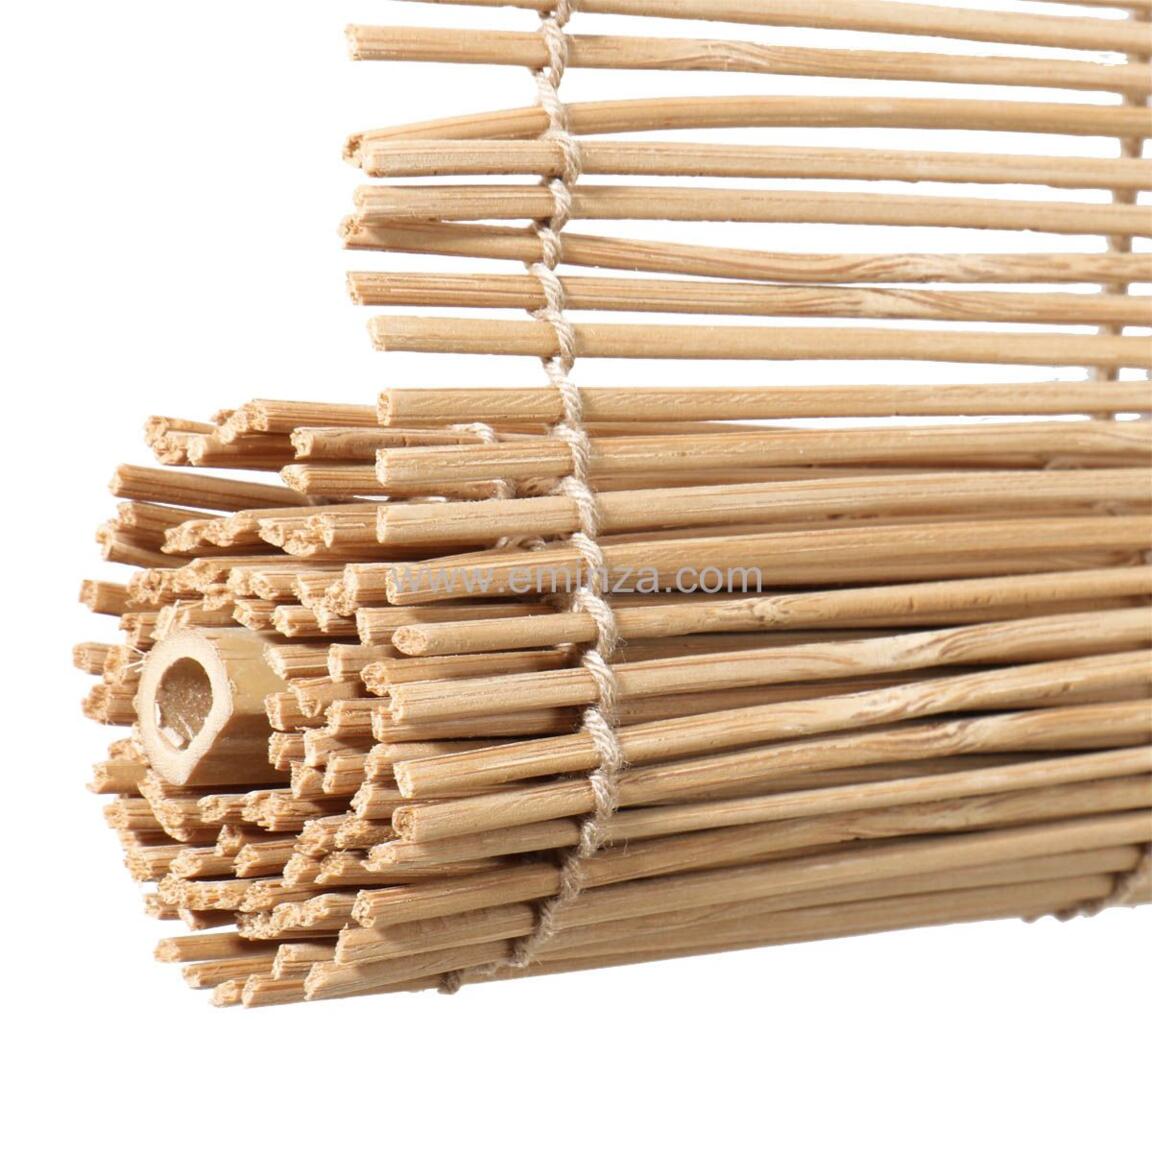 Store enrouleur bambou naturel 120 x 180 cm